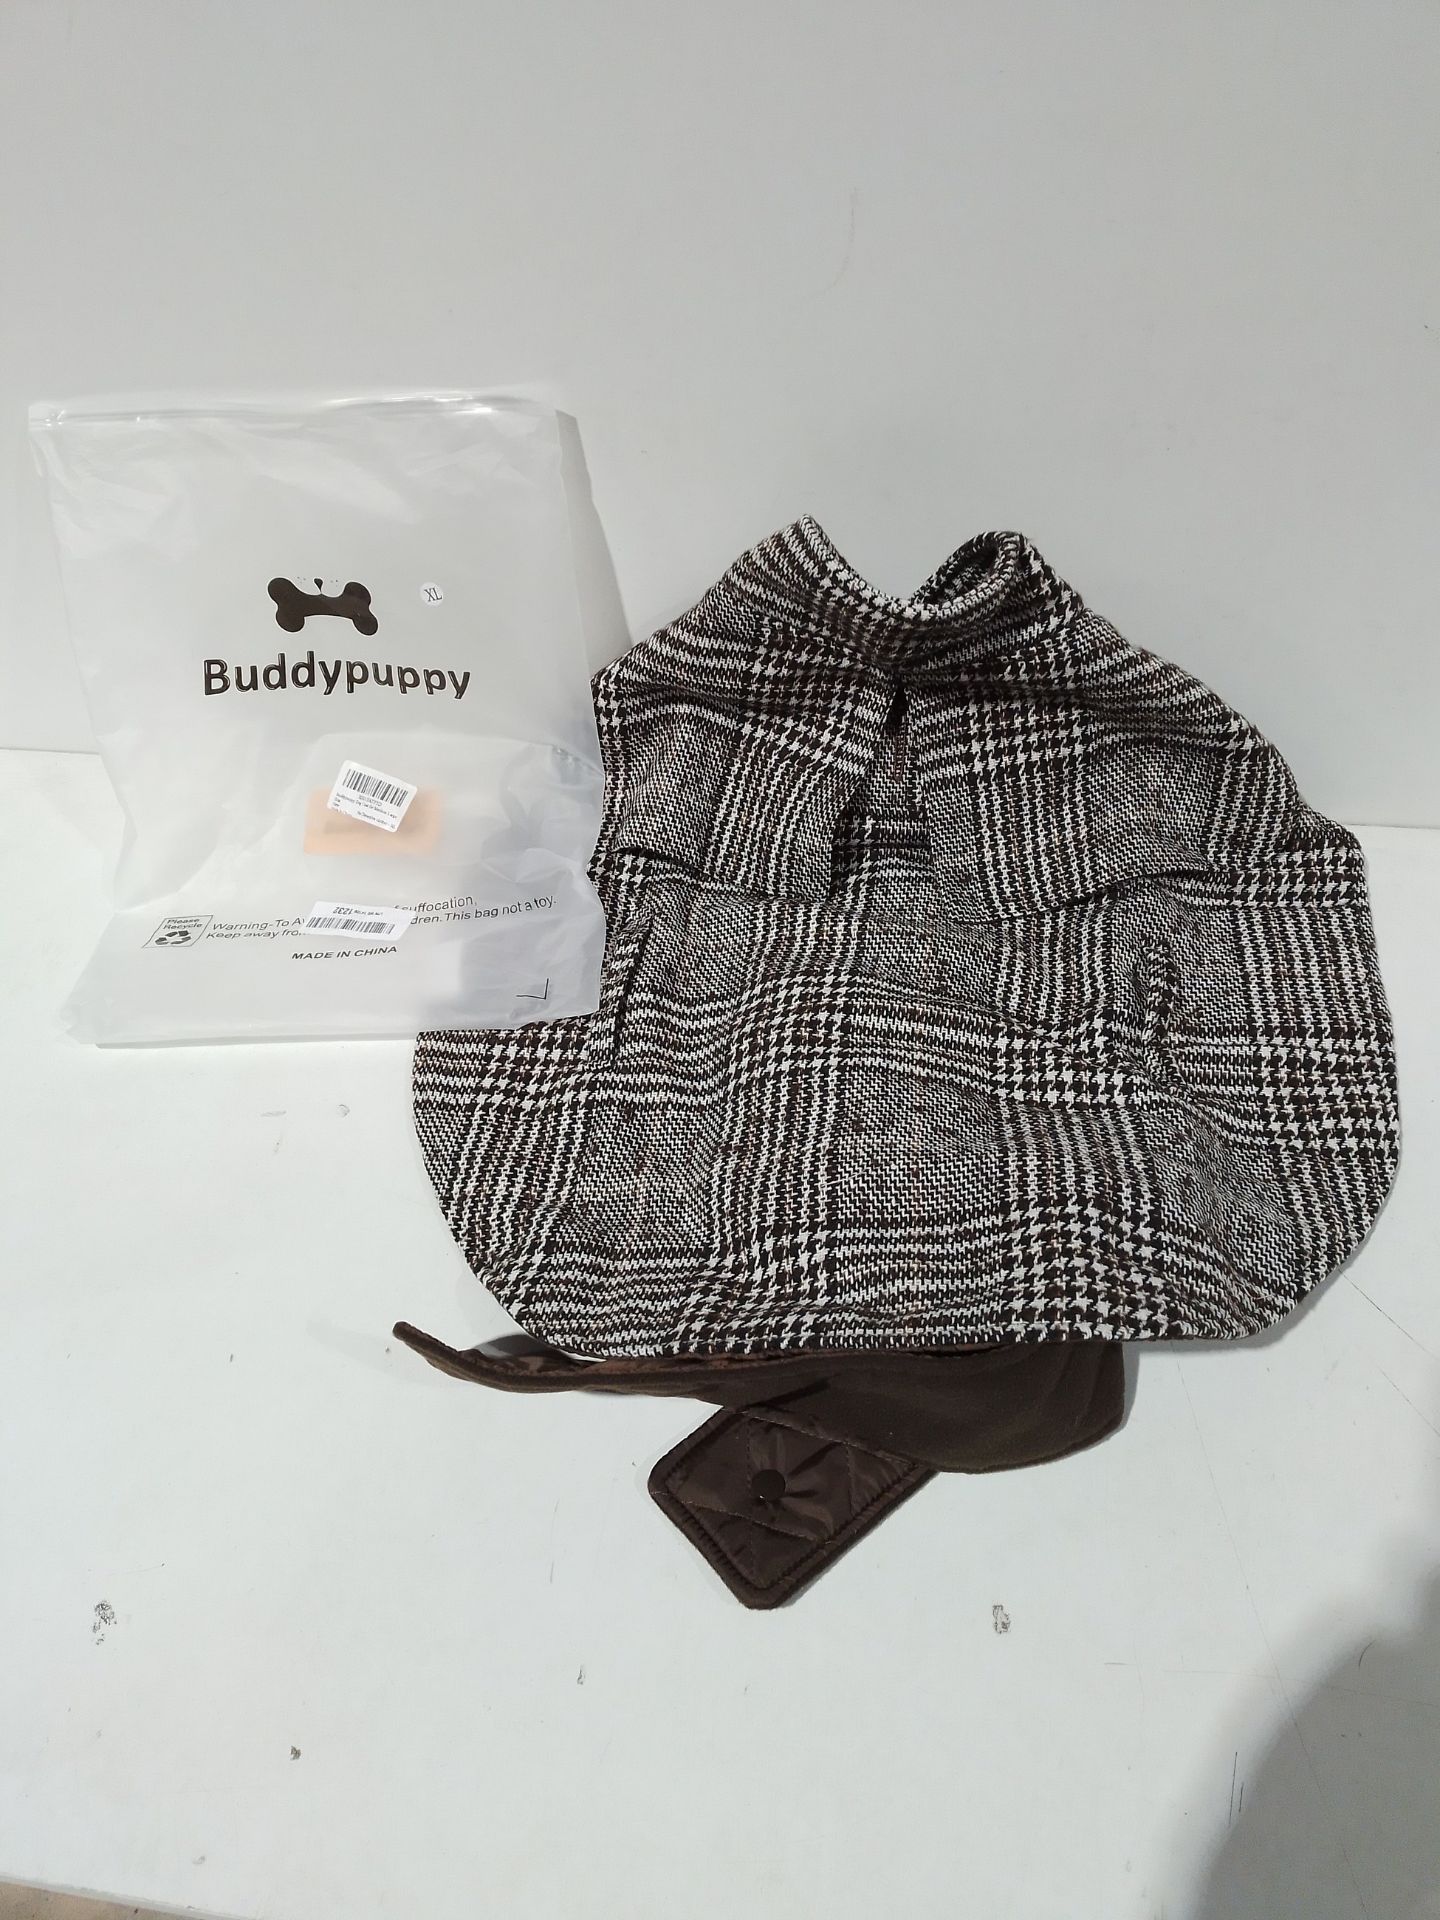 RRP £27.28 Buddypuppy Dog Coat - Image 2 of 2